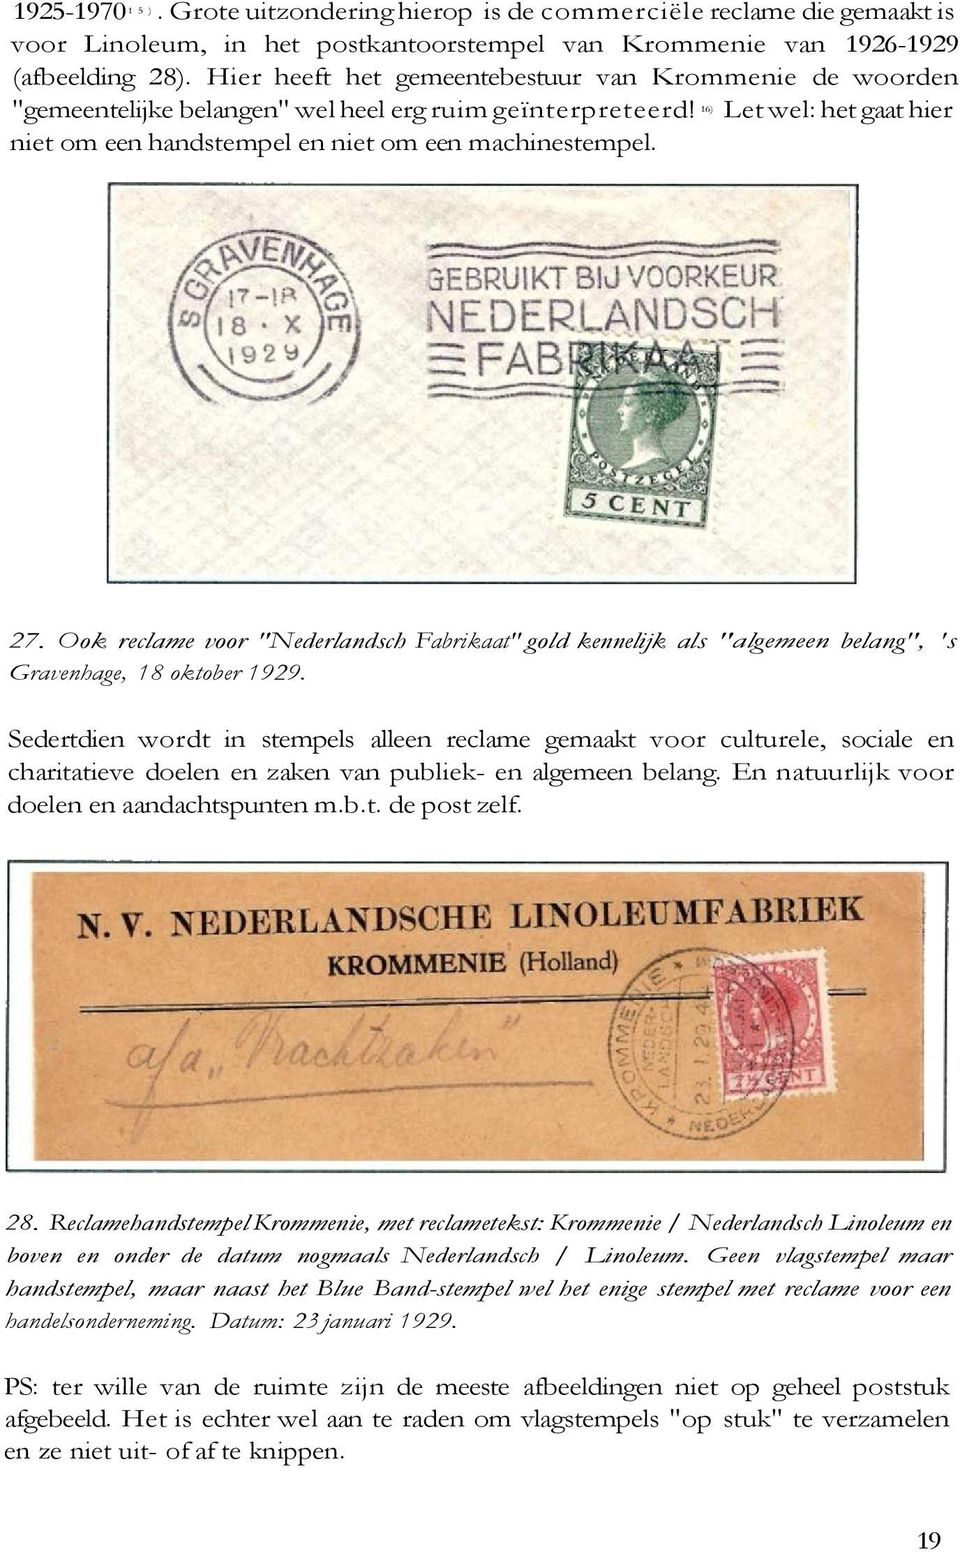 27. Ook reclame voor "Nederlandsch Fabrikaat" gold kennelijk als "algemeen belang", 's Gravenhage, 18 oktober 1929.